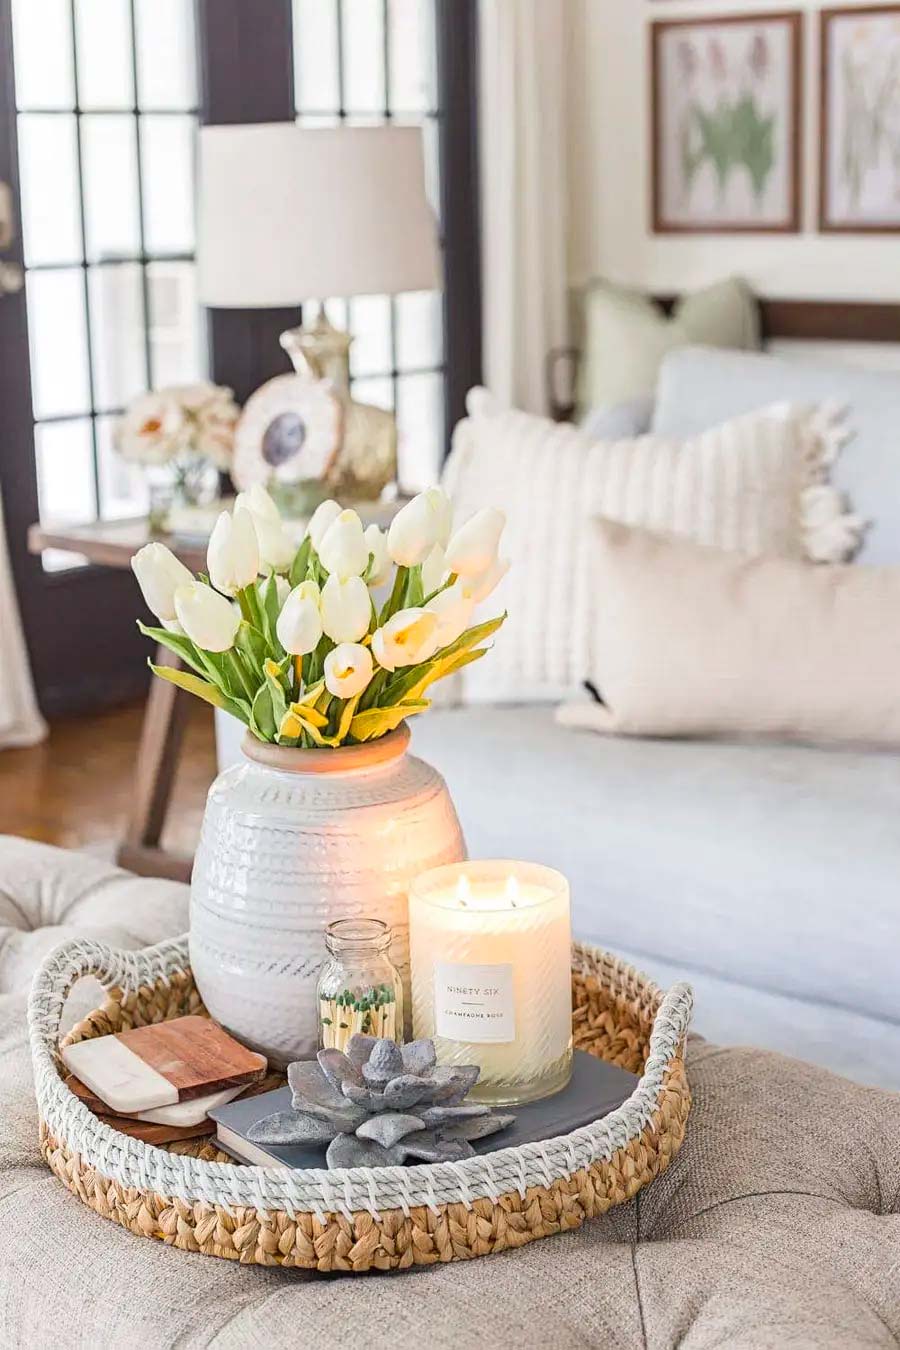 Detalle de living de una bandeja de mimbre con un florero blanco con flores blancas, una vela blanca prendida y otras decoraciones.